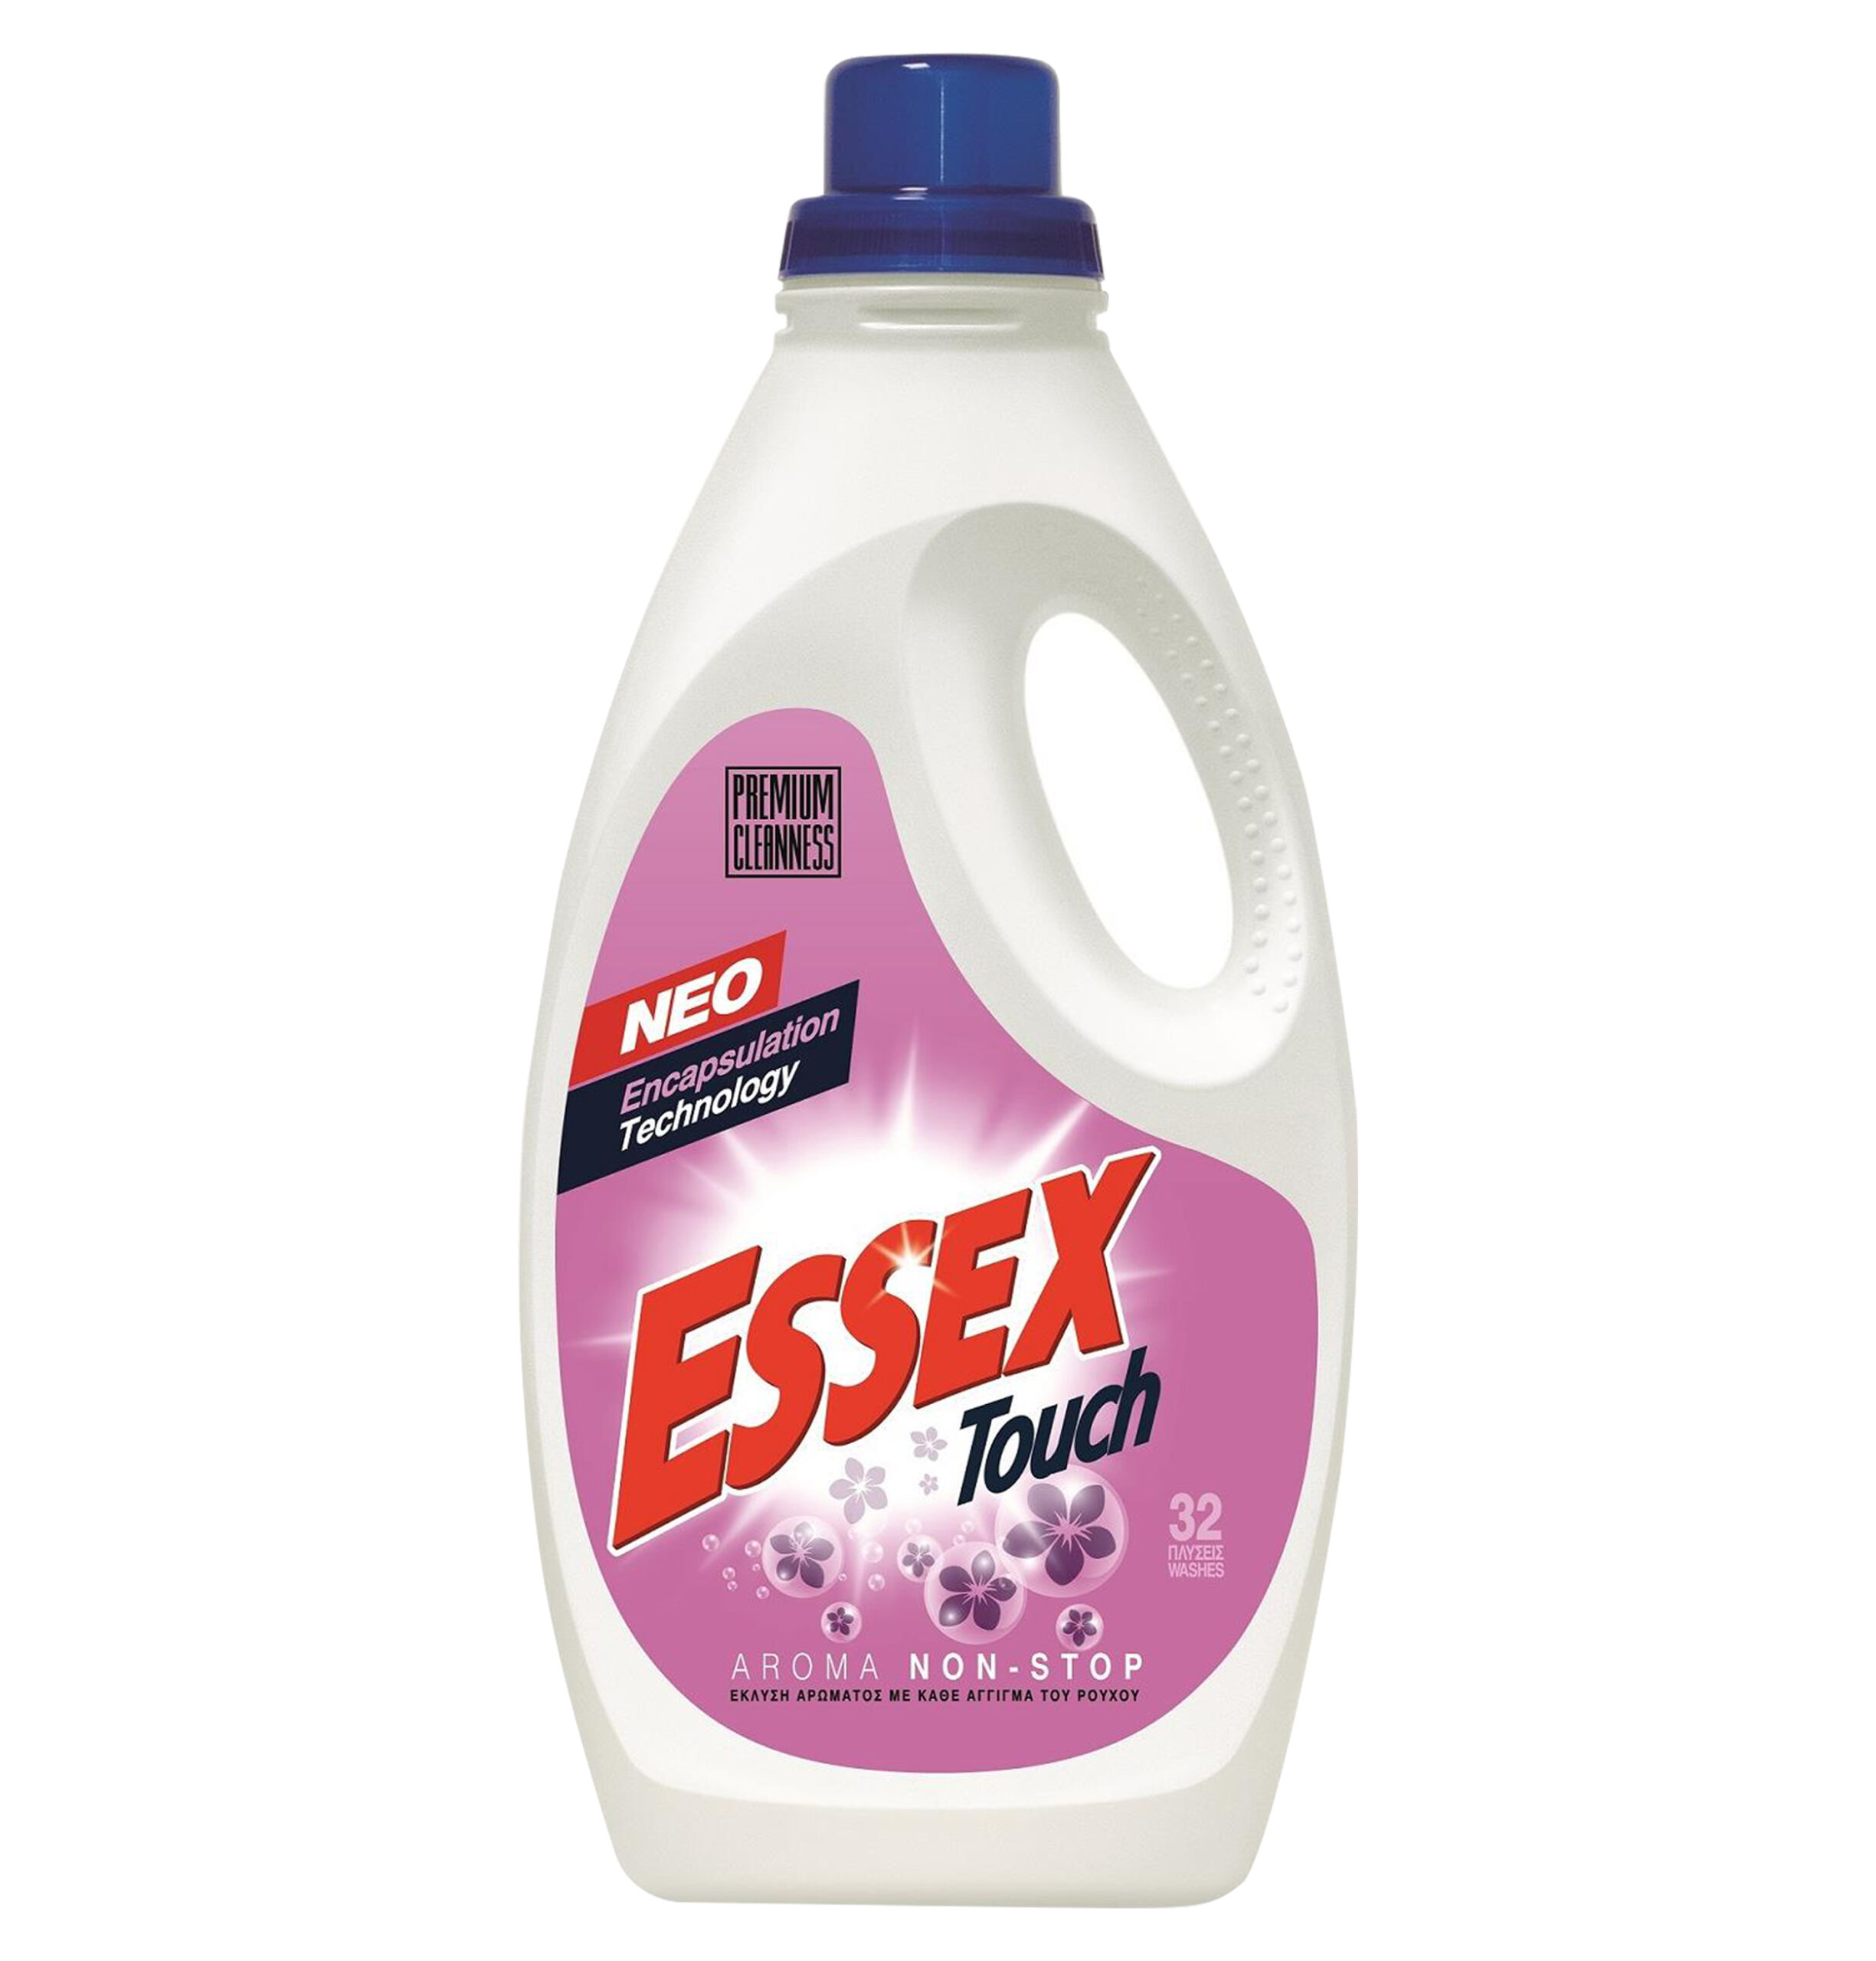 Υγρό πλυντηρίου ρούχων Essex 1,6lt- touch 32 μεζ. [40604021]